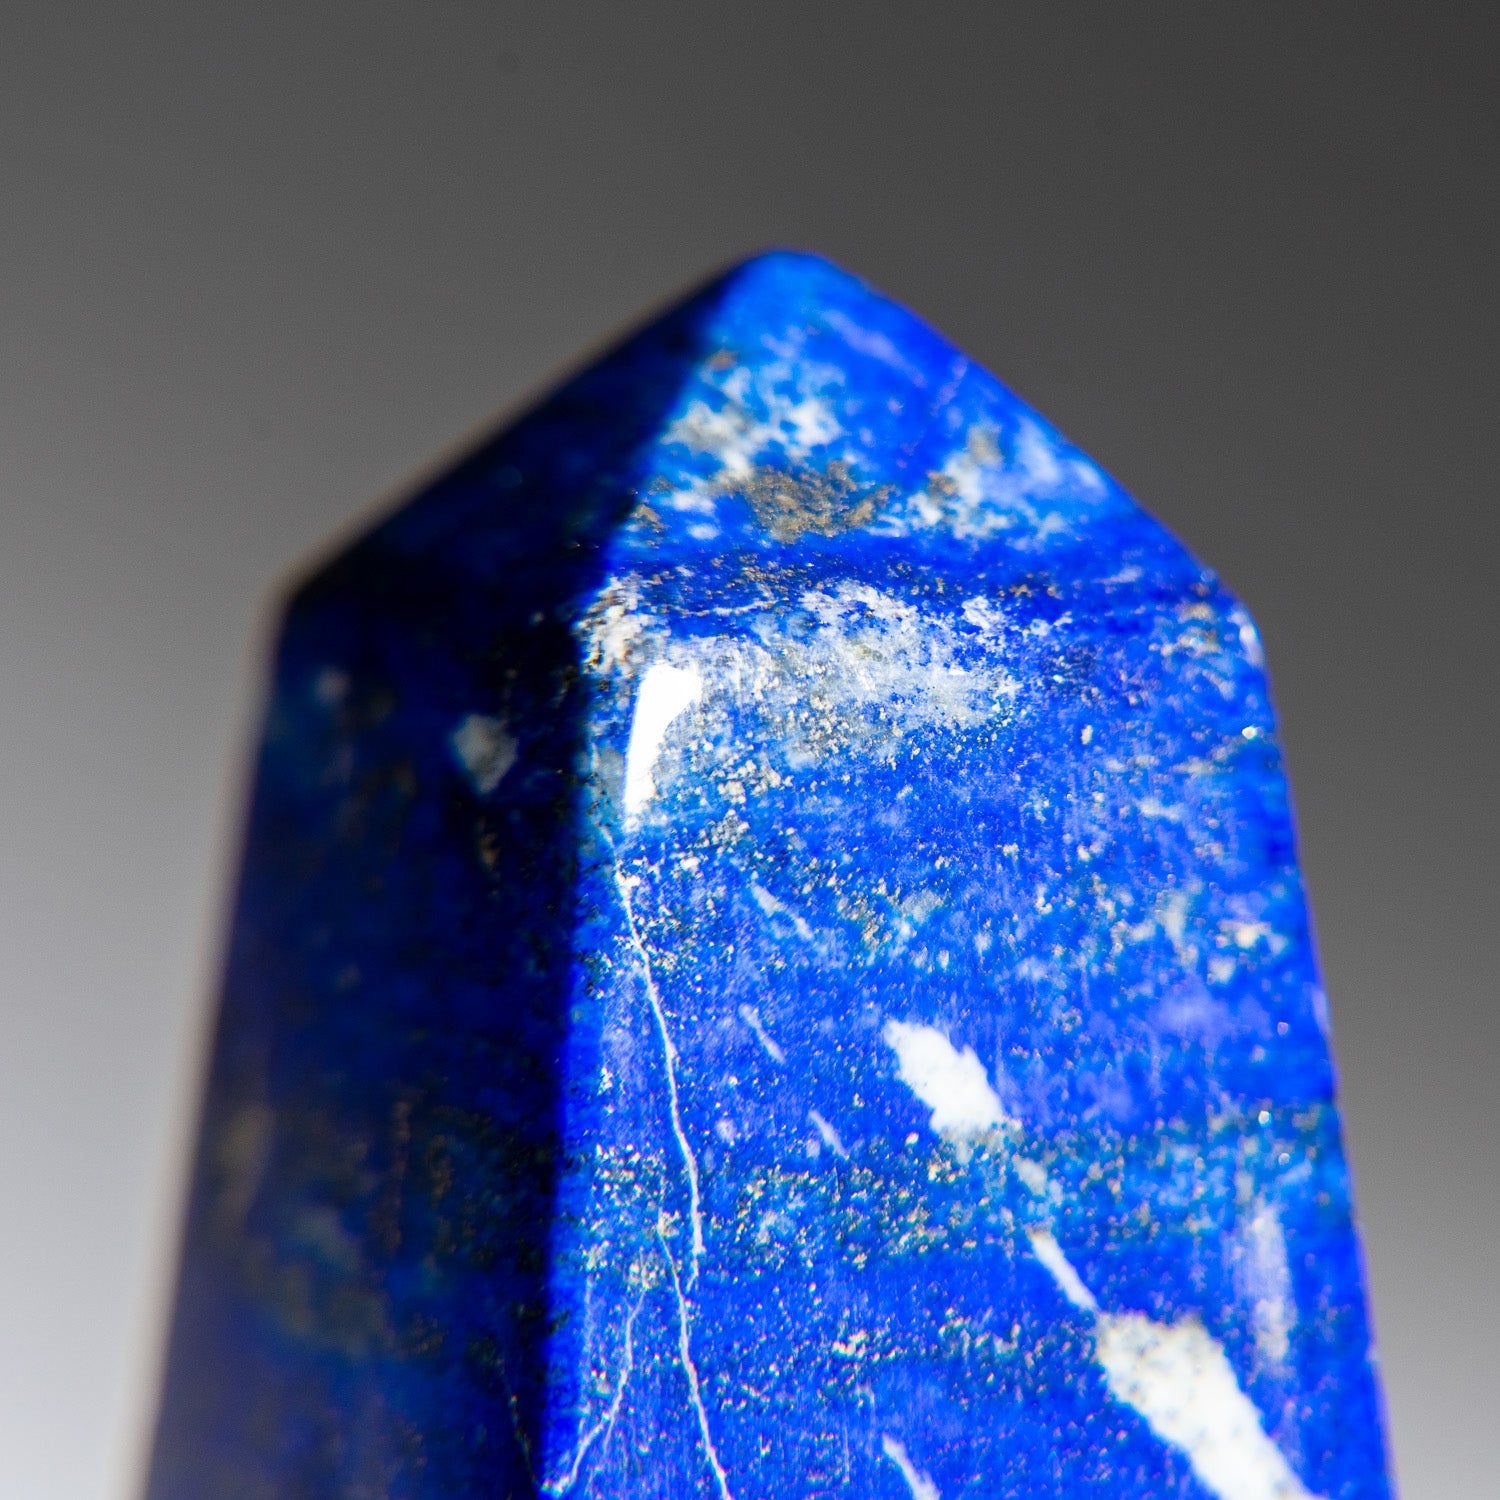 Polished Lapis Lazuli Obelisk from Afghanistan (148 grams)